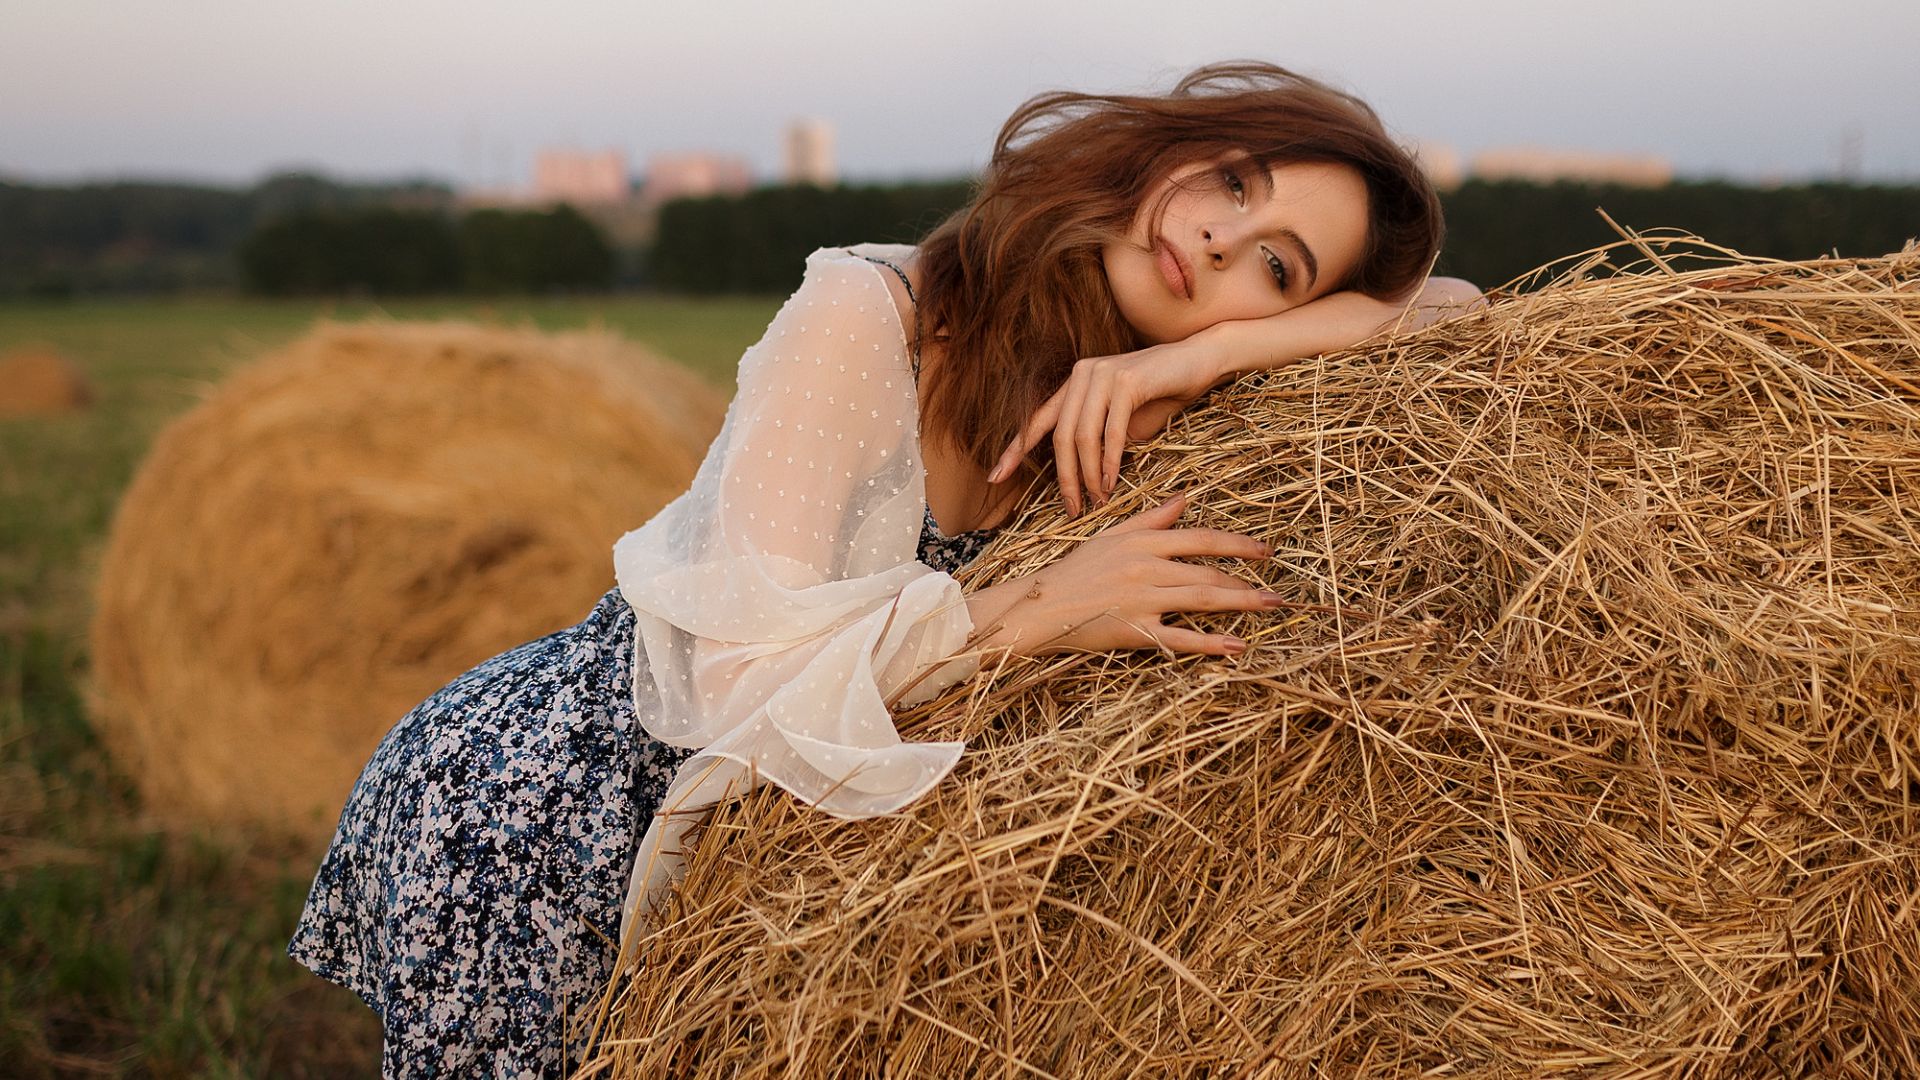 Wallpaper Outdoor, girl model, hay